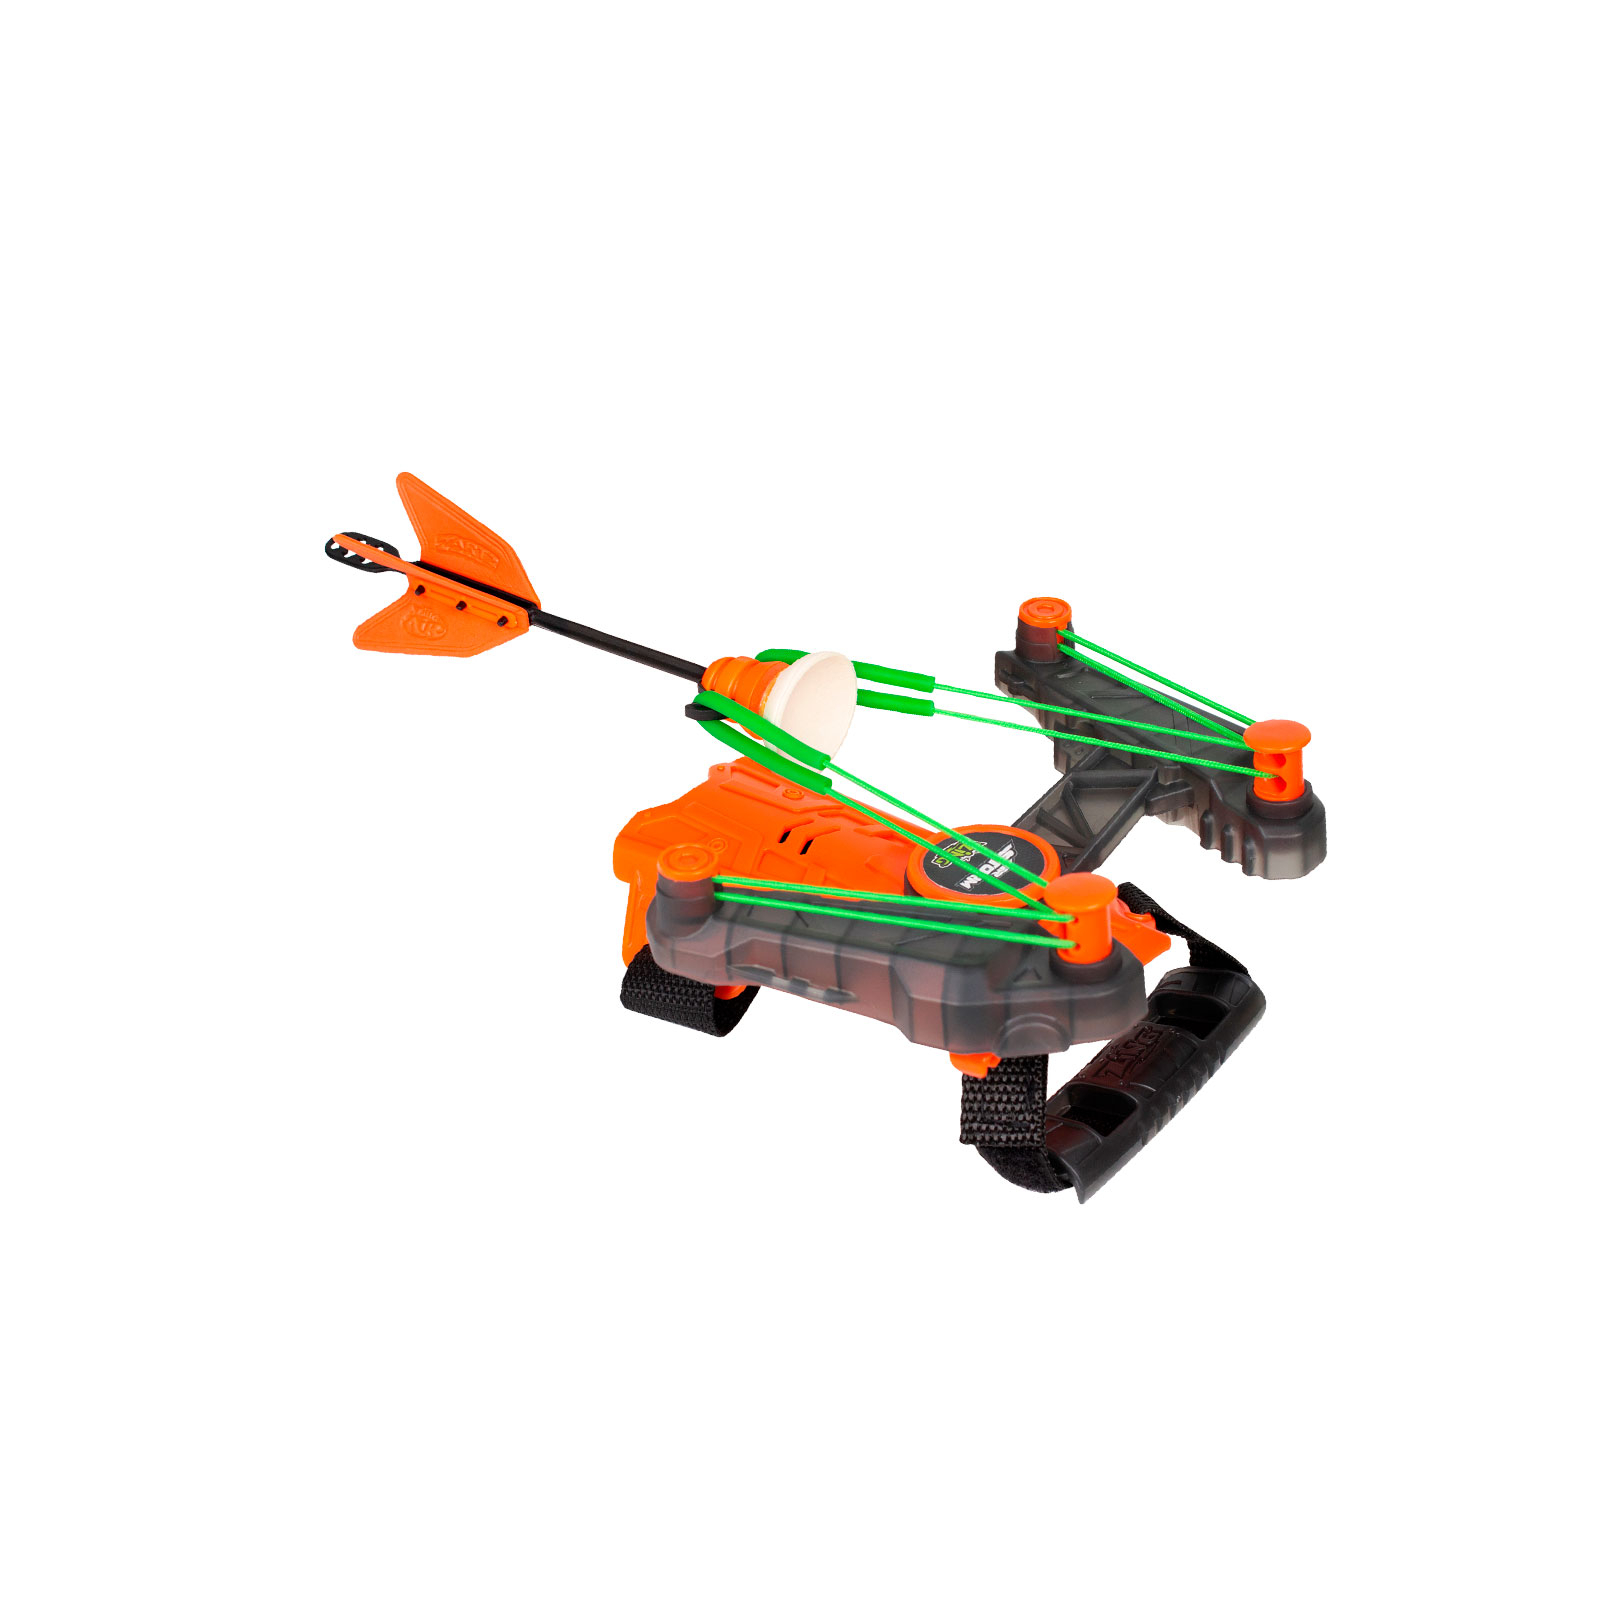 Игрушечное оружие Zing лук на запястье Air Storm - Wrist bow оранж (AS140O) изображение 5